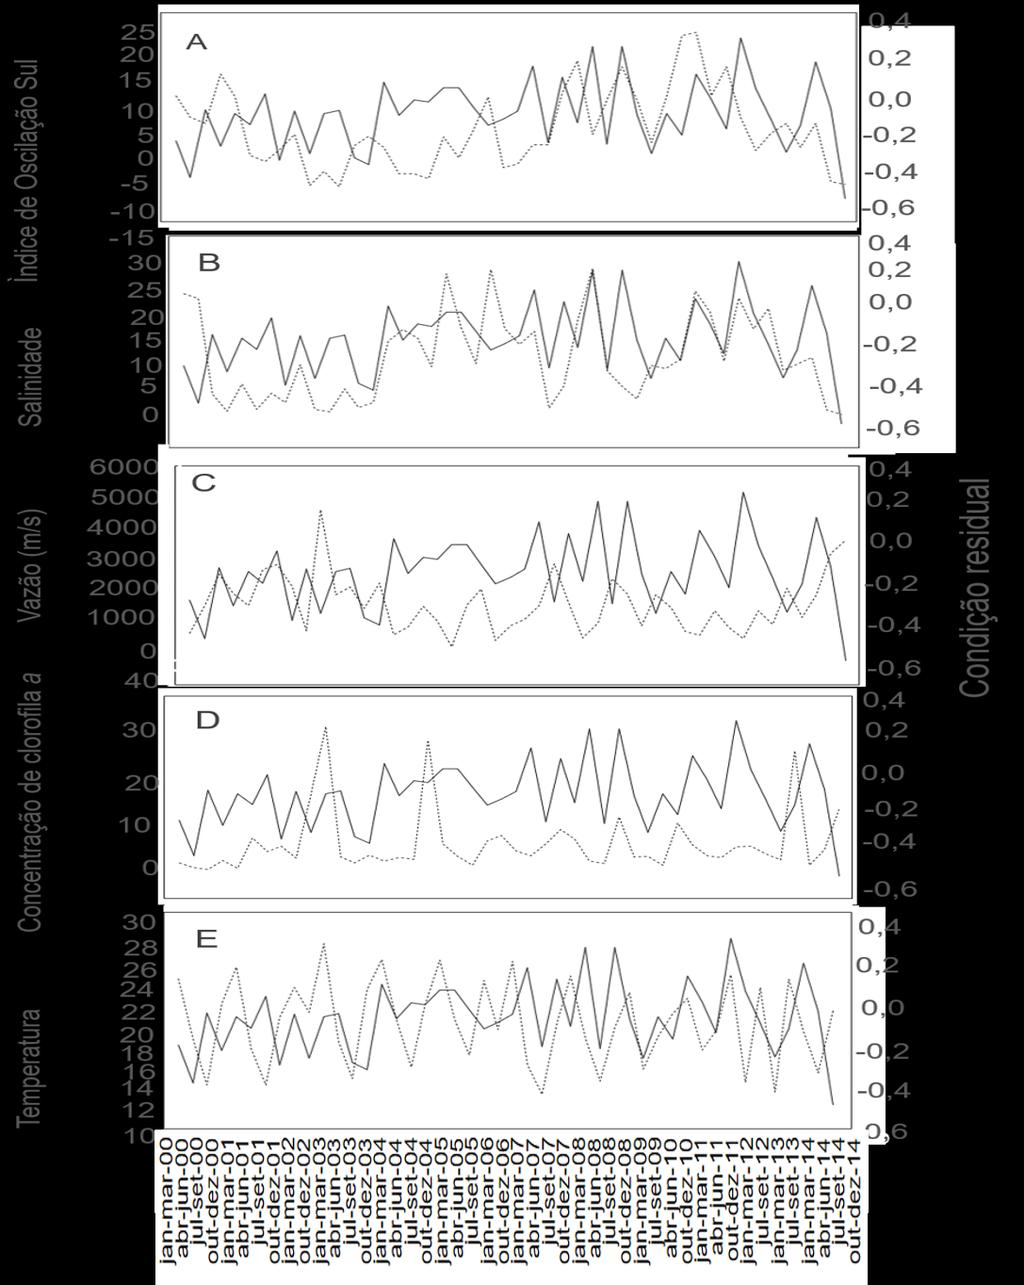 65 Figura 34 - série temporal temporal trimestral para o período compreendido entre 2000 e 2014 do índice de condição residual de larvas